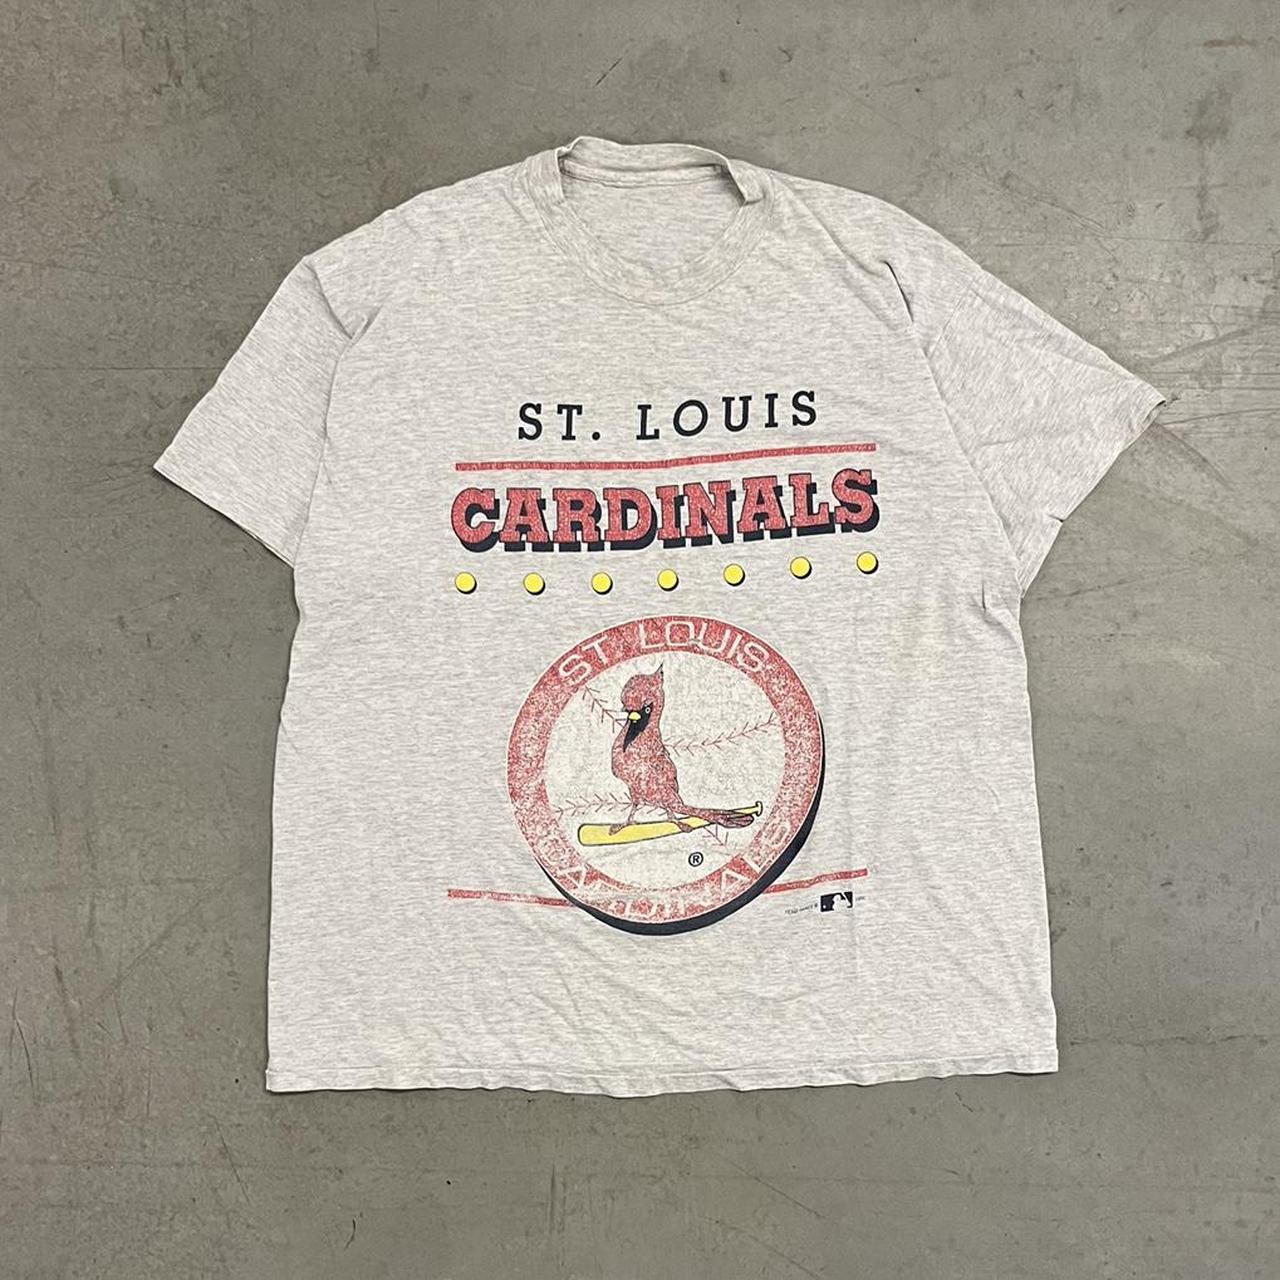 Vintage St. Louis cardinals graphic t shirt size xl - Depop